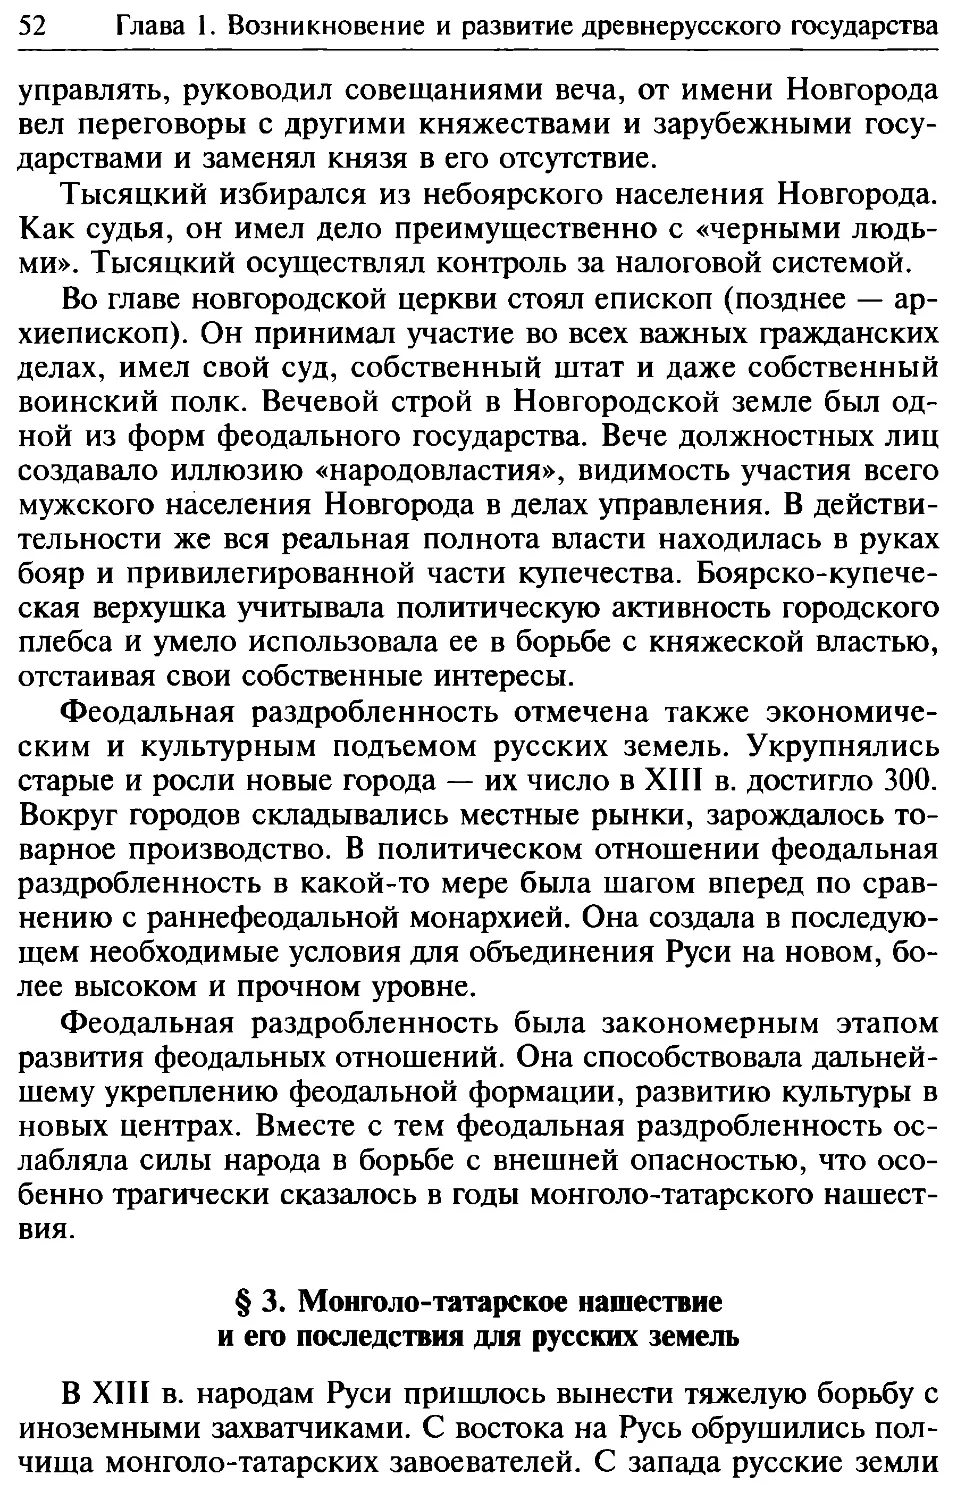 § 3. Монголо-татарское нашествие и его последствия для русских земель